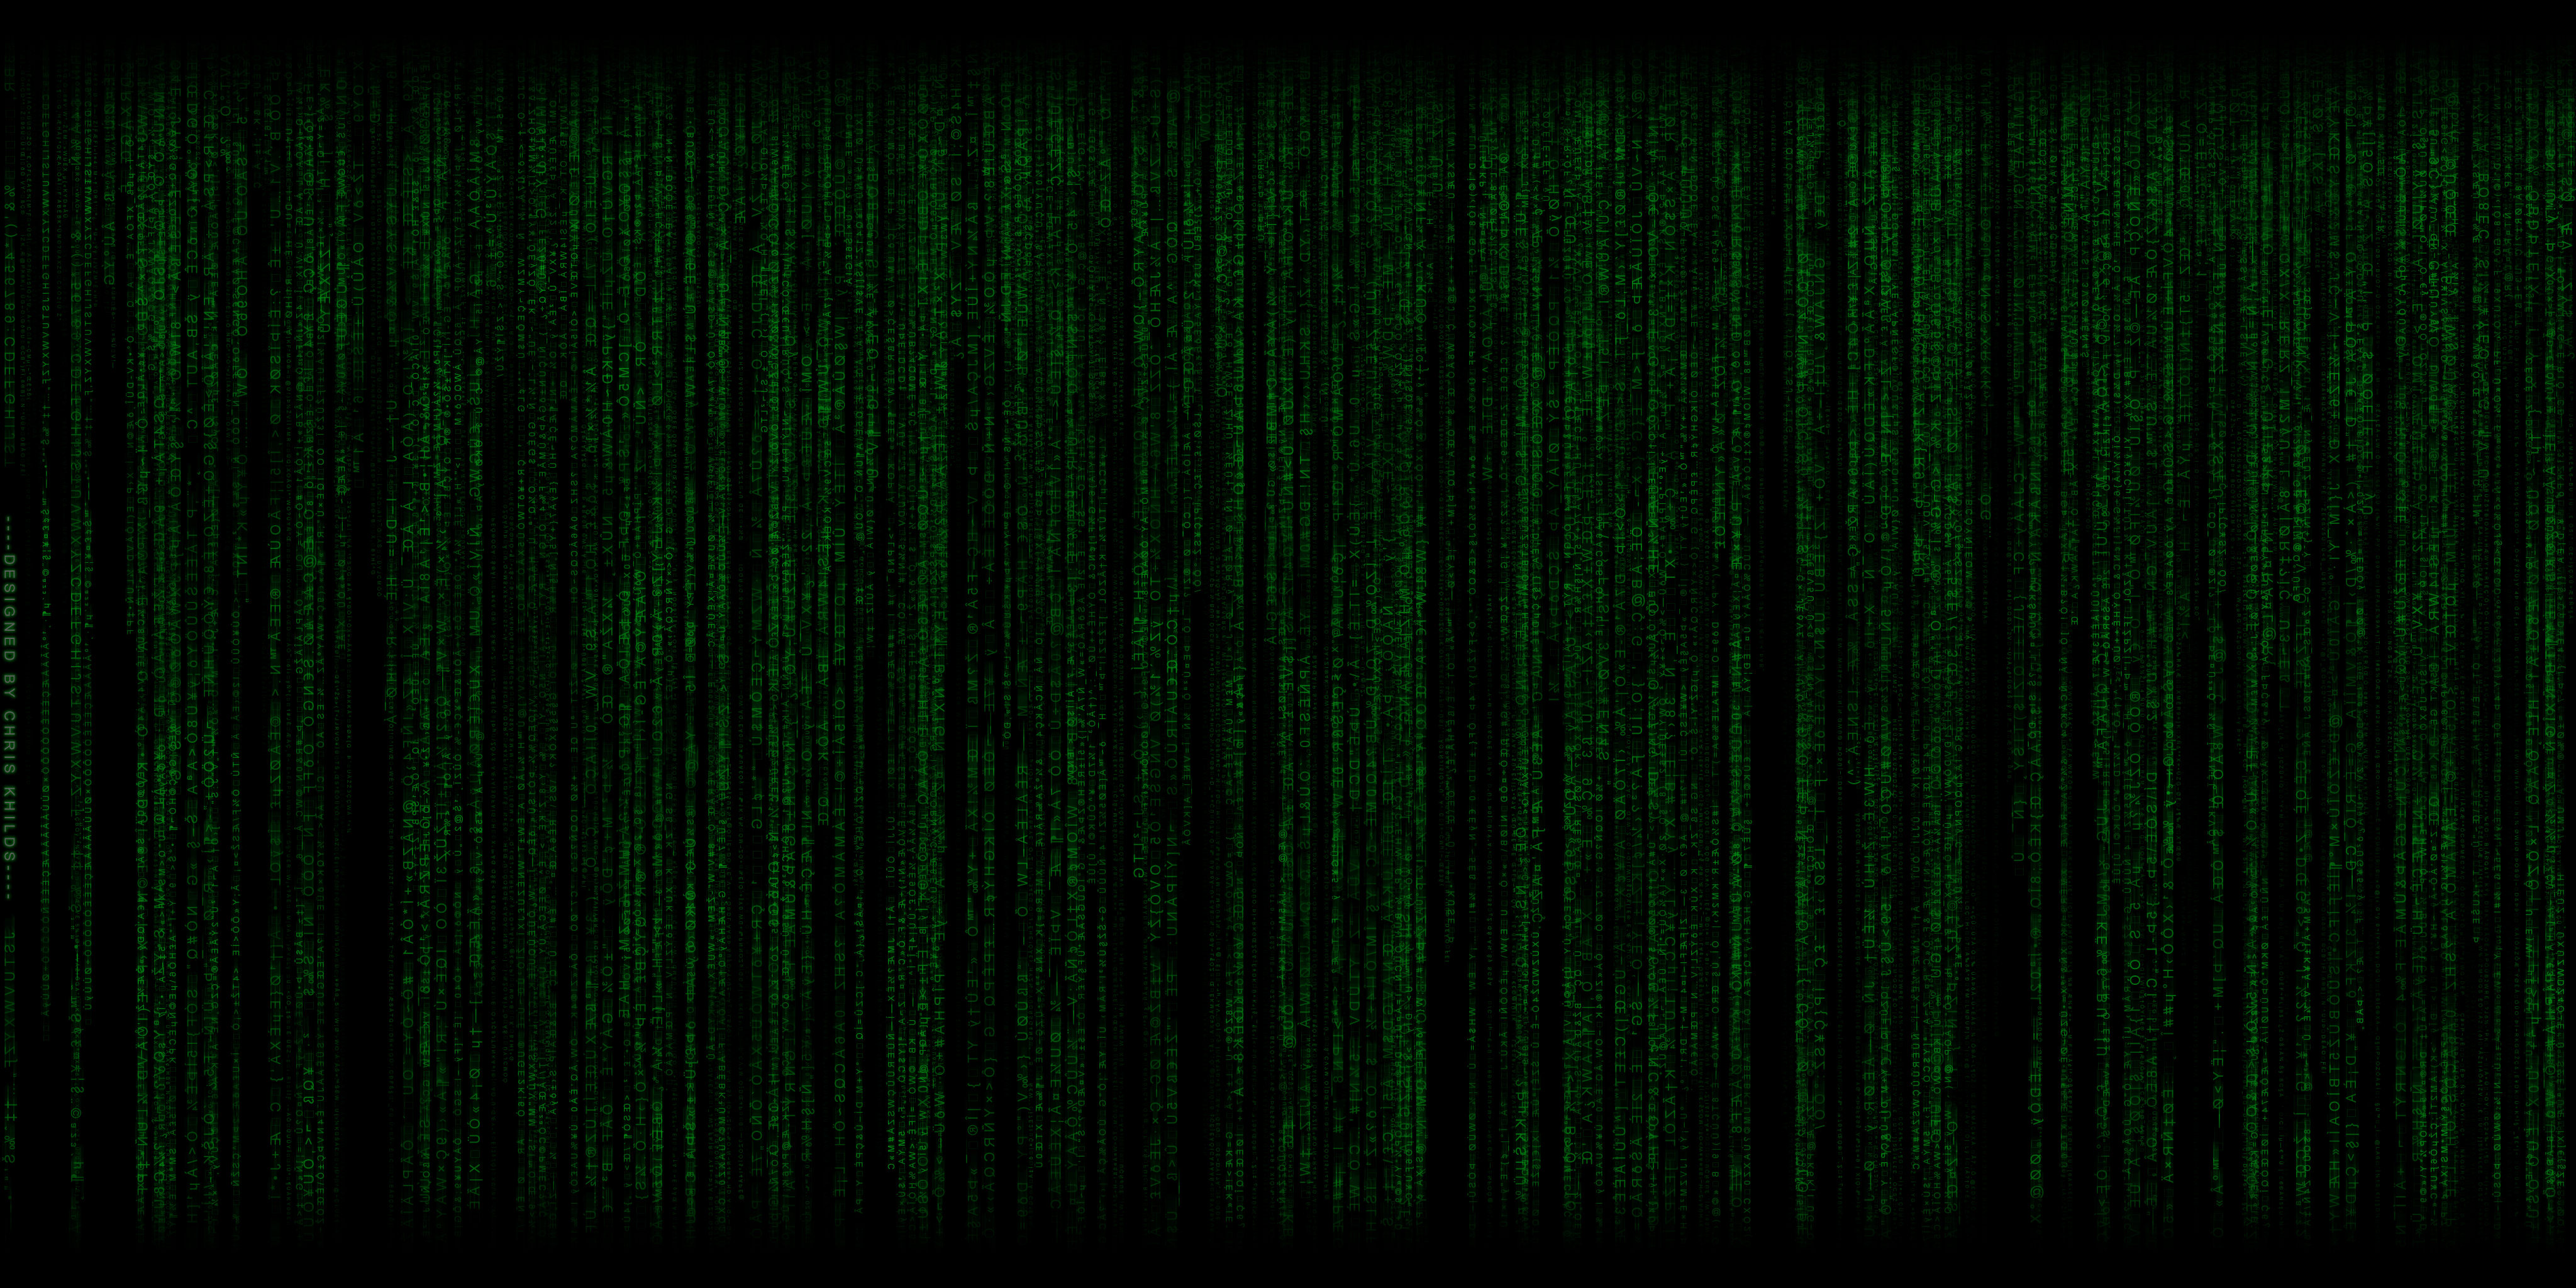 Matrix Phone Wallpaper. The Matrix Wallpaper, Matrix Wallpaper Moving and Matrix Technology Wallpaper